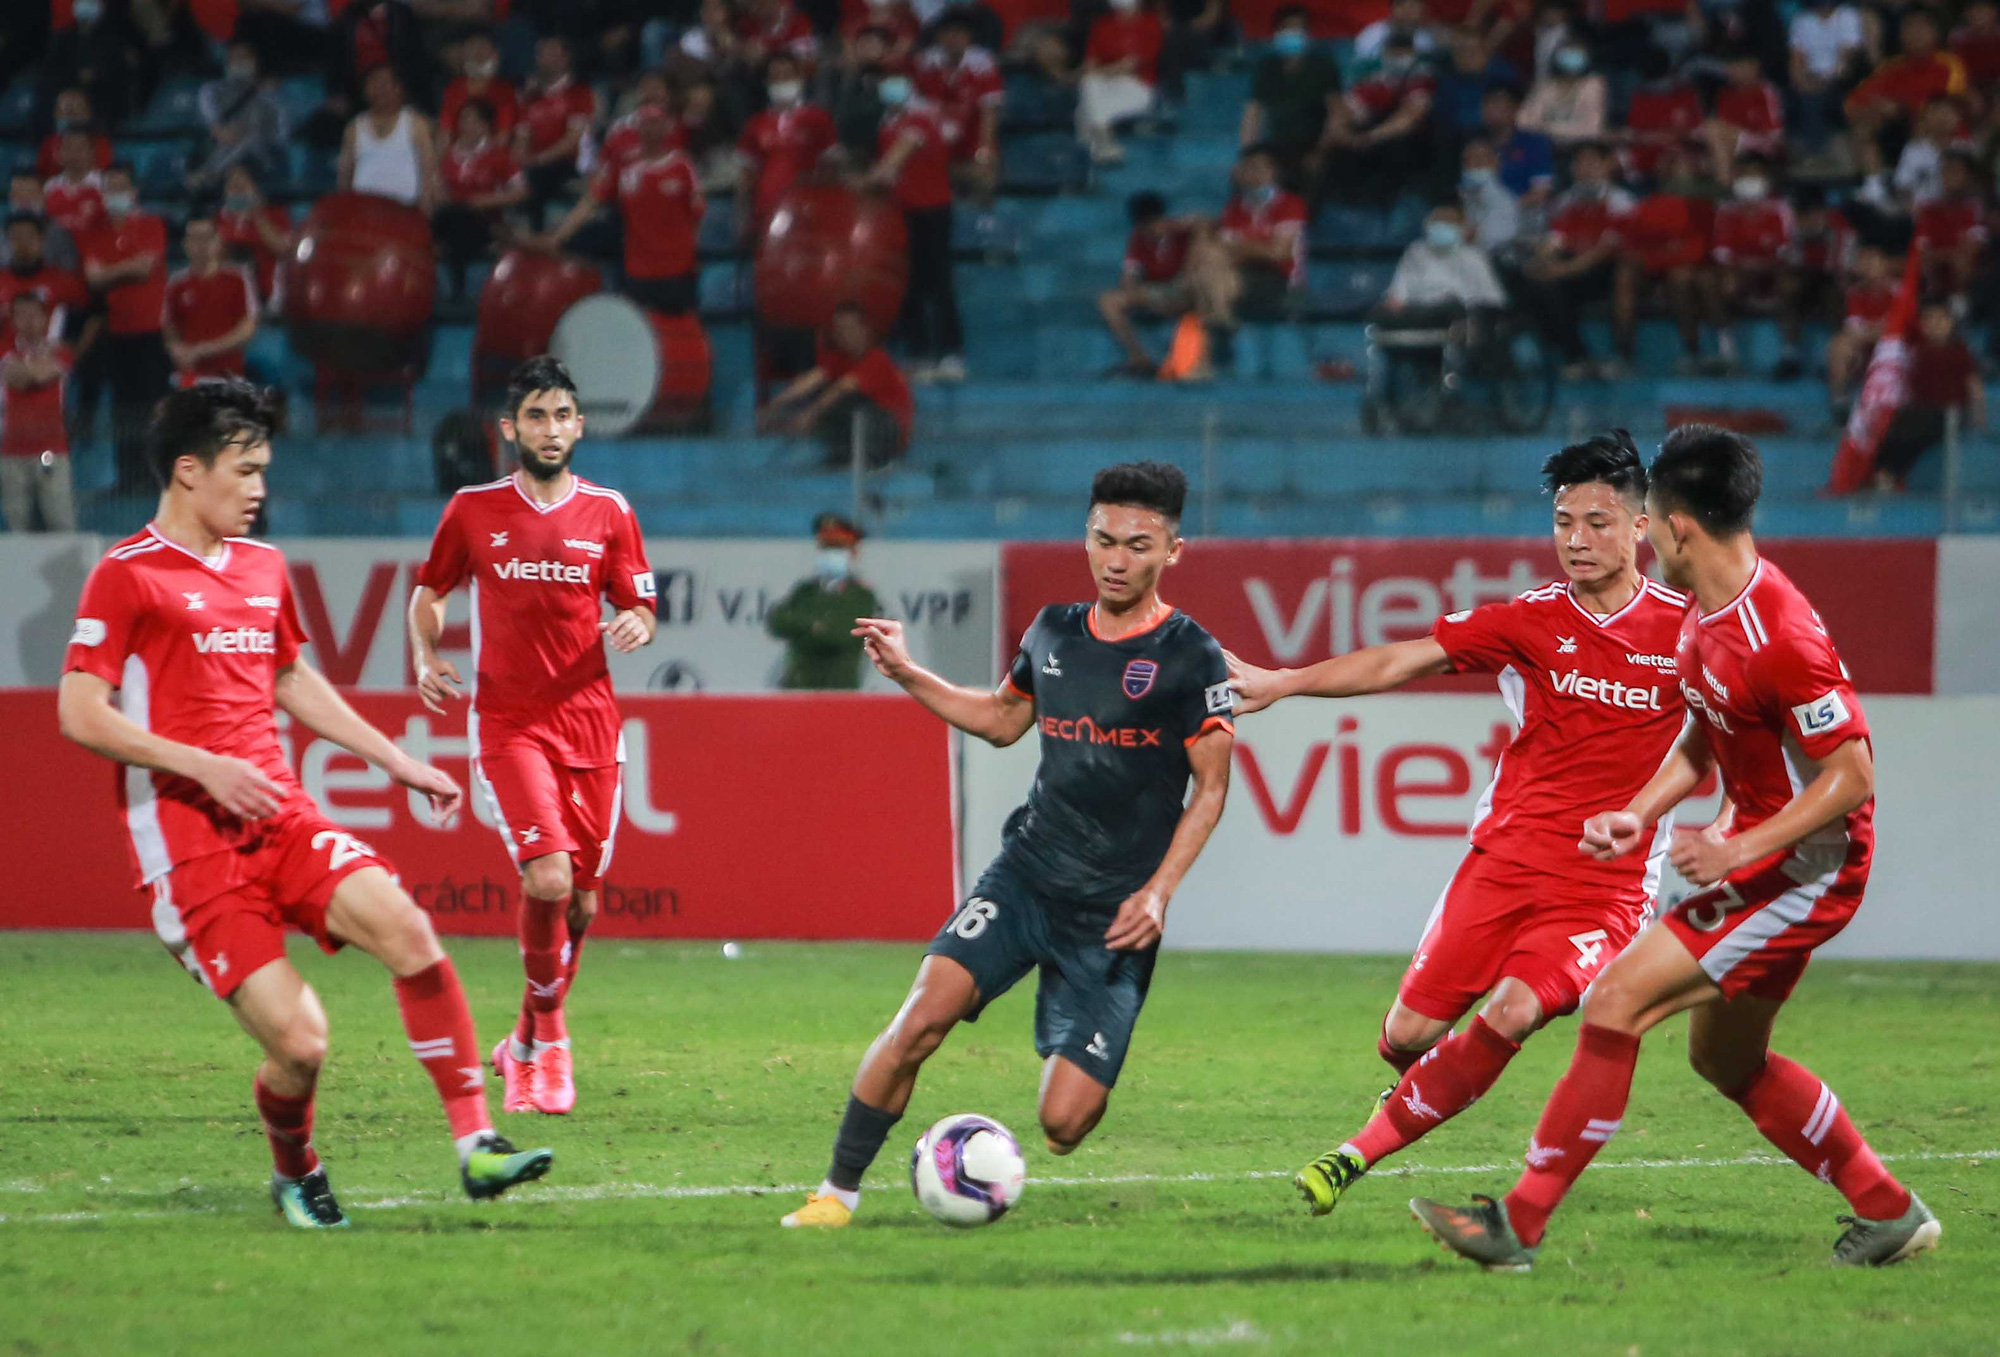 Ngọc Hải trở lại ghi bàn giúp CLB Viettel thắng đậm trước Bình Dương - Ảnh 14.